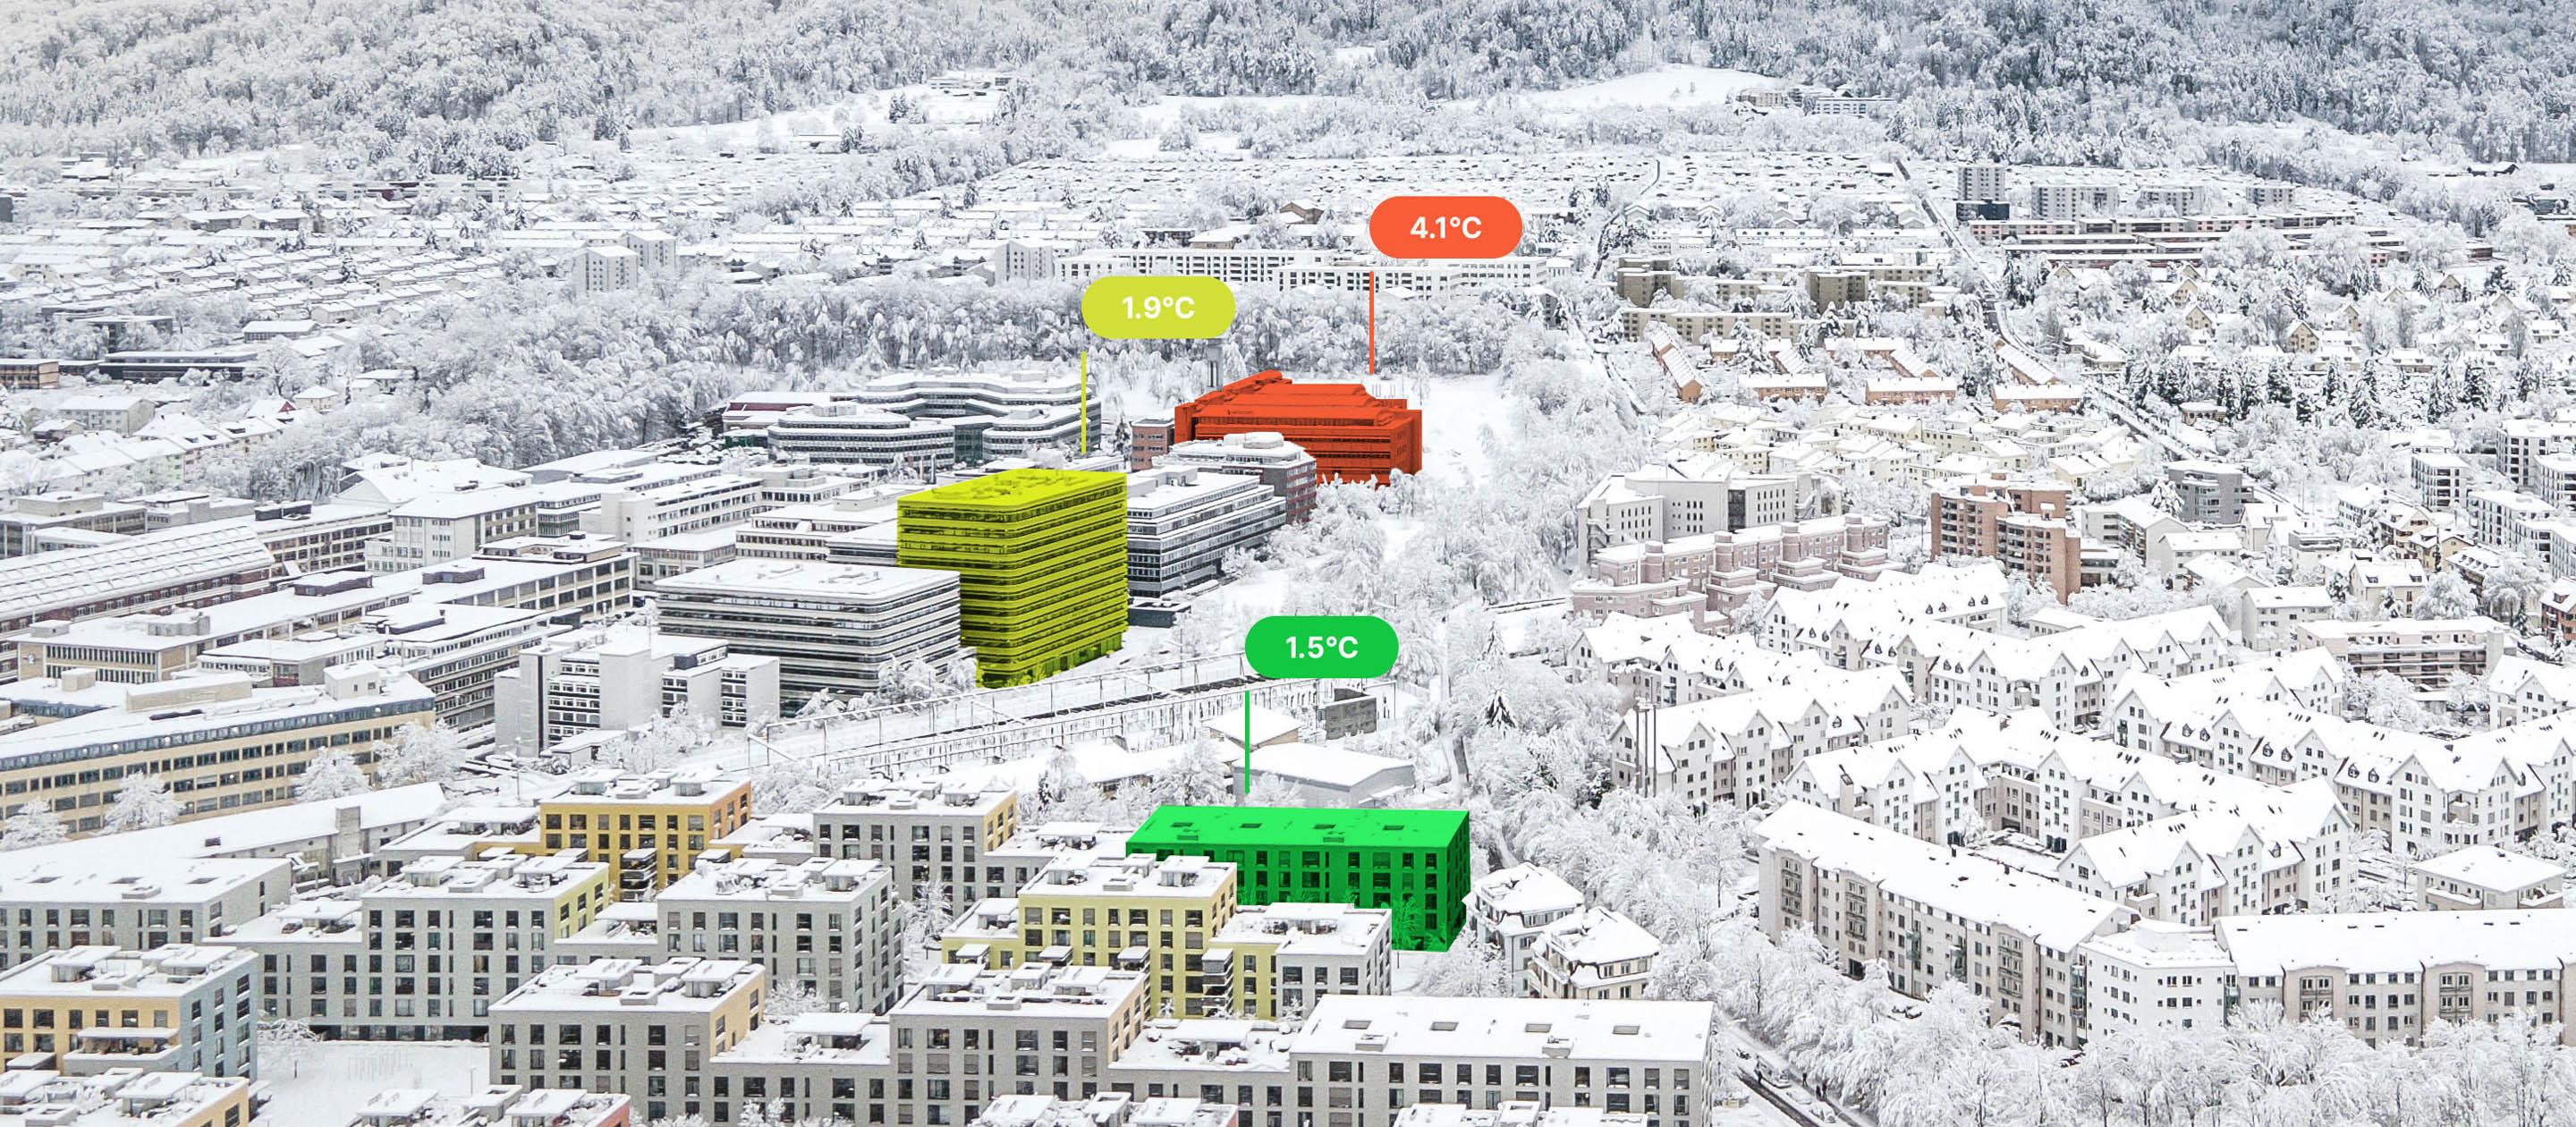 Blick auf verschneite Gebäude von oben, drei davon sind eingefärbt. Eines in rot mit der Anschrift 4.1°C, eines in gelb mit 1.9°C und ein drittes in grün mit 1.5°C.